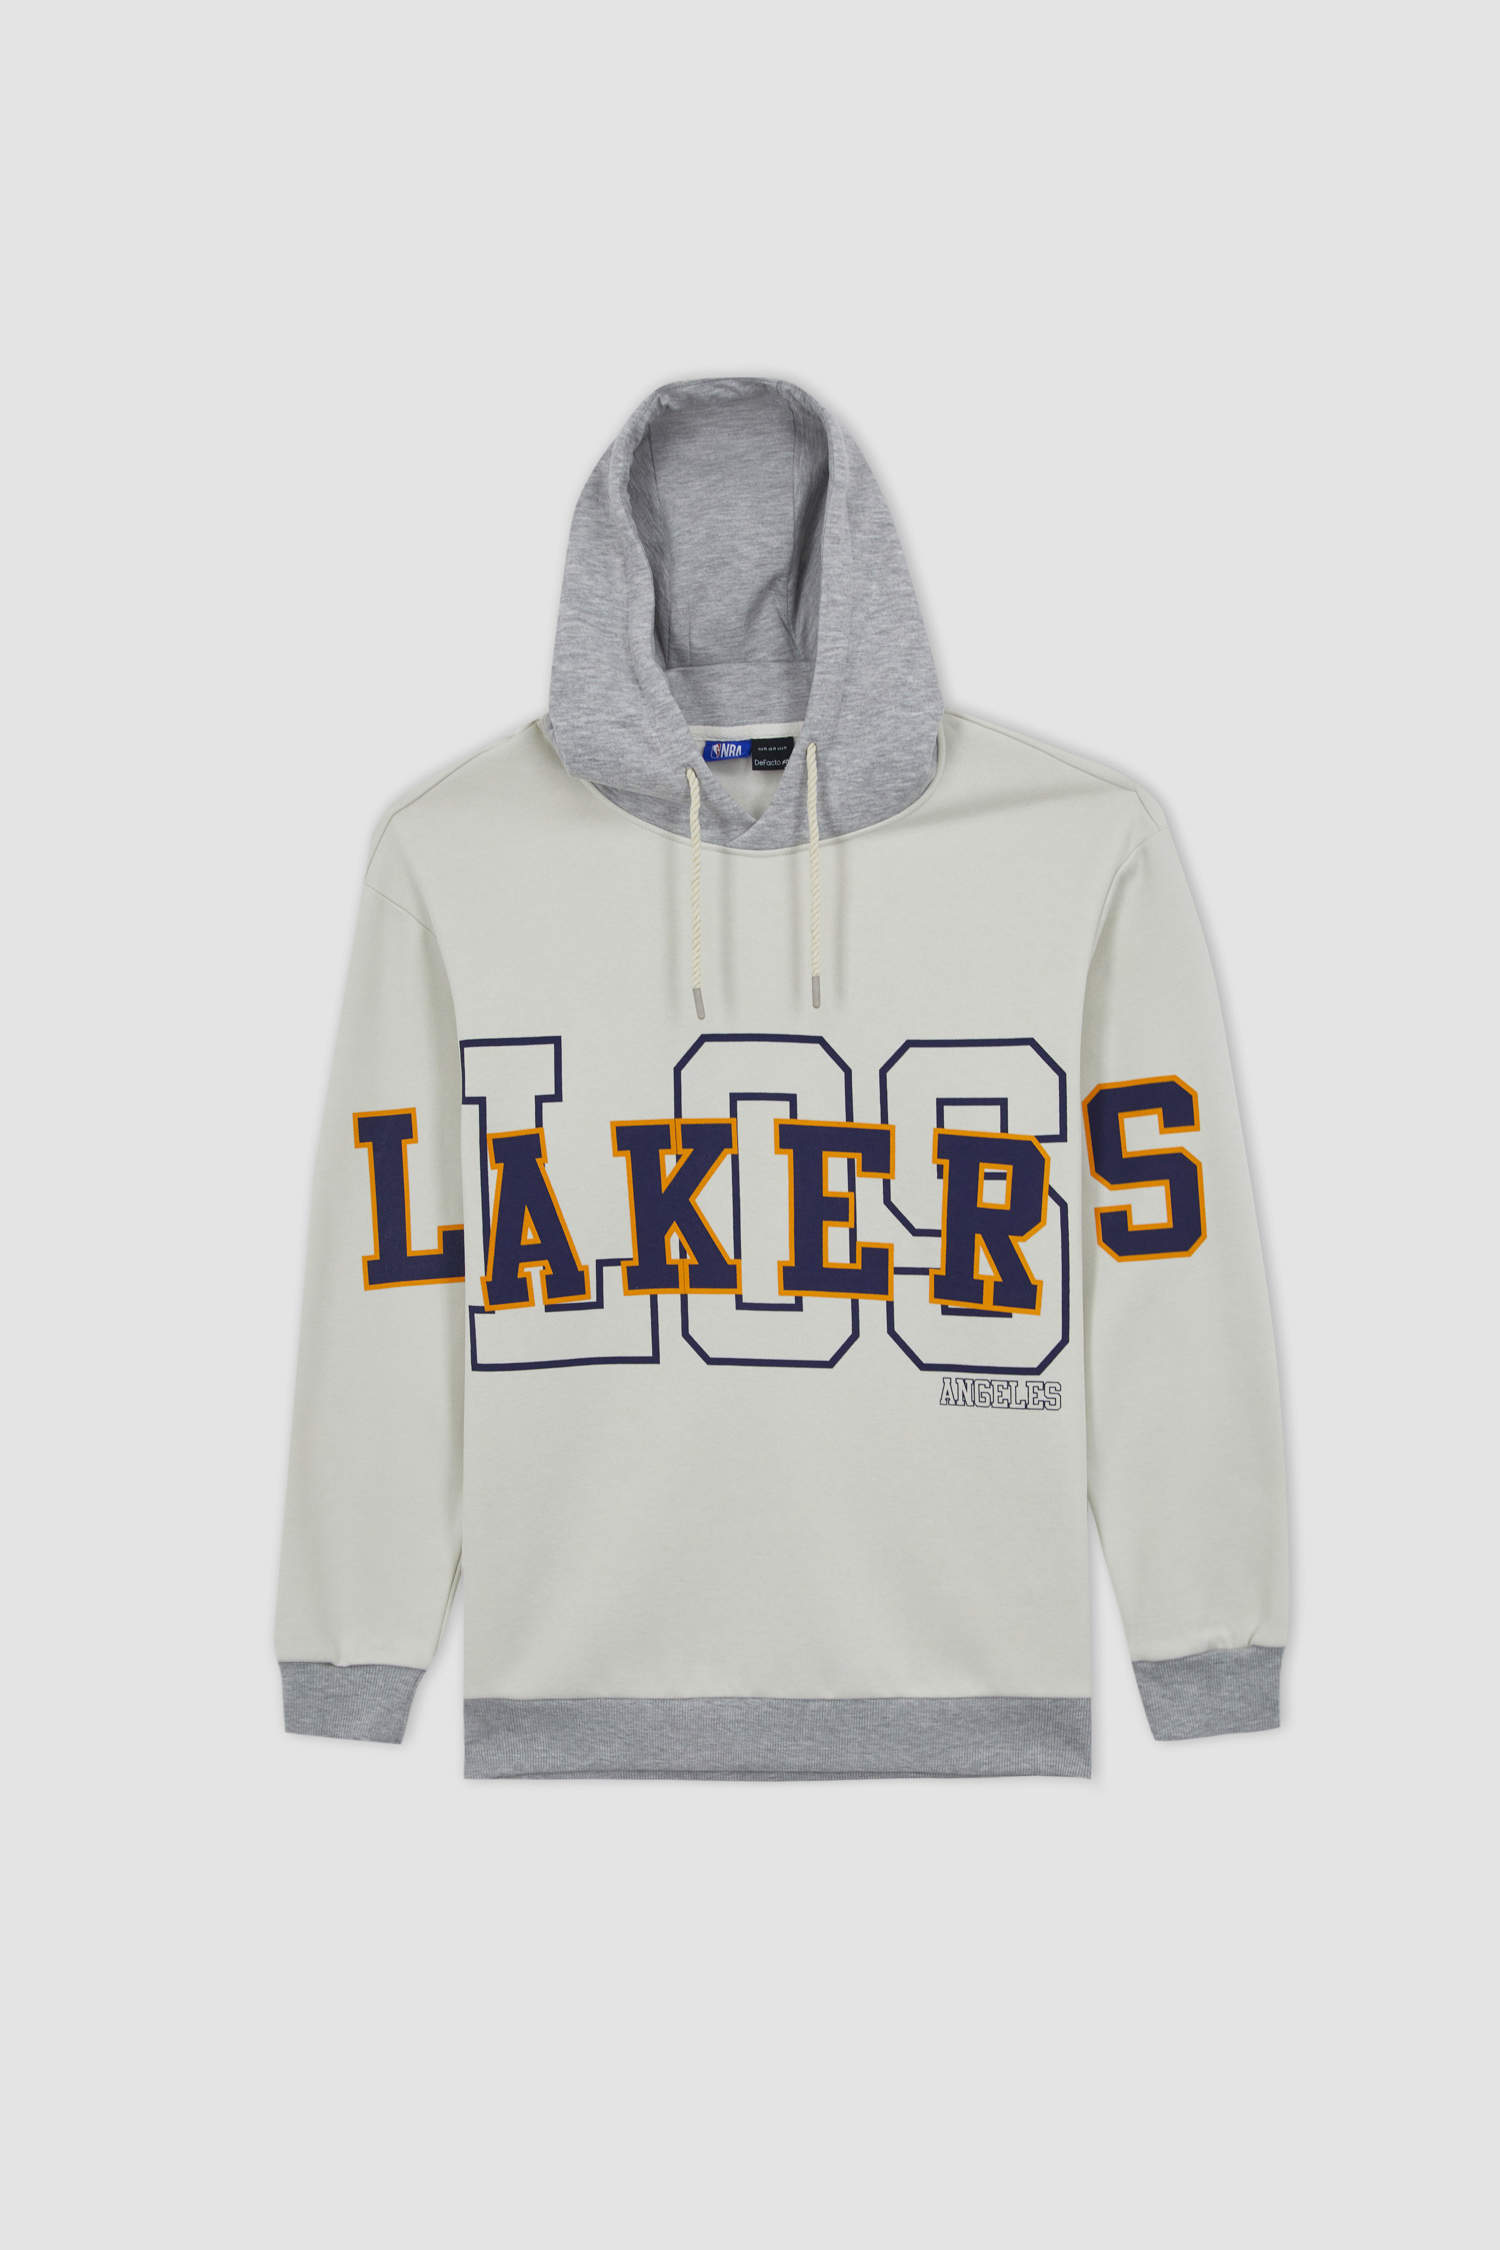 Beige BOYS & TEENS Oversize Fit NBA Los Angeles Lakers Licensed Hooded  Sweatshirt 2854616